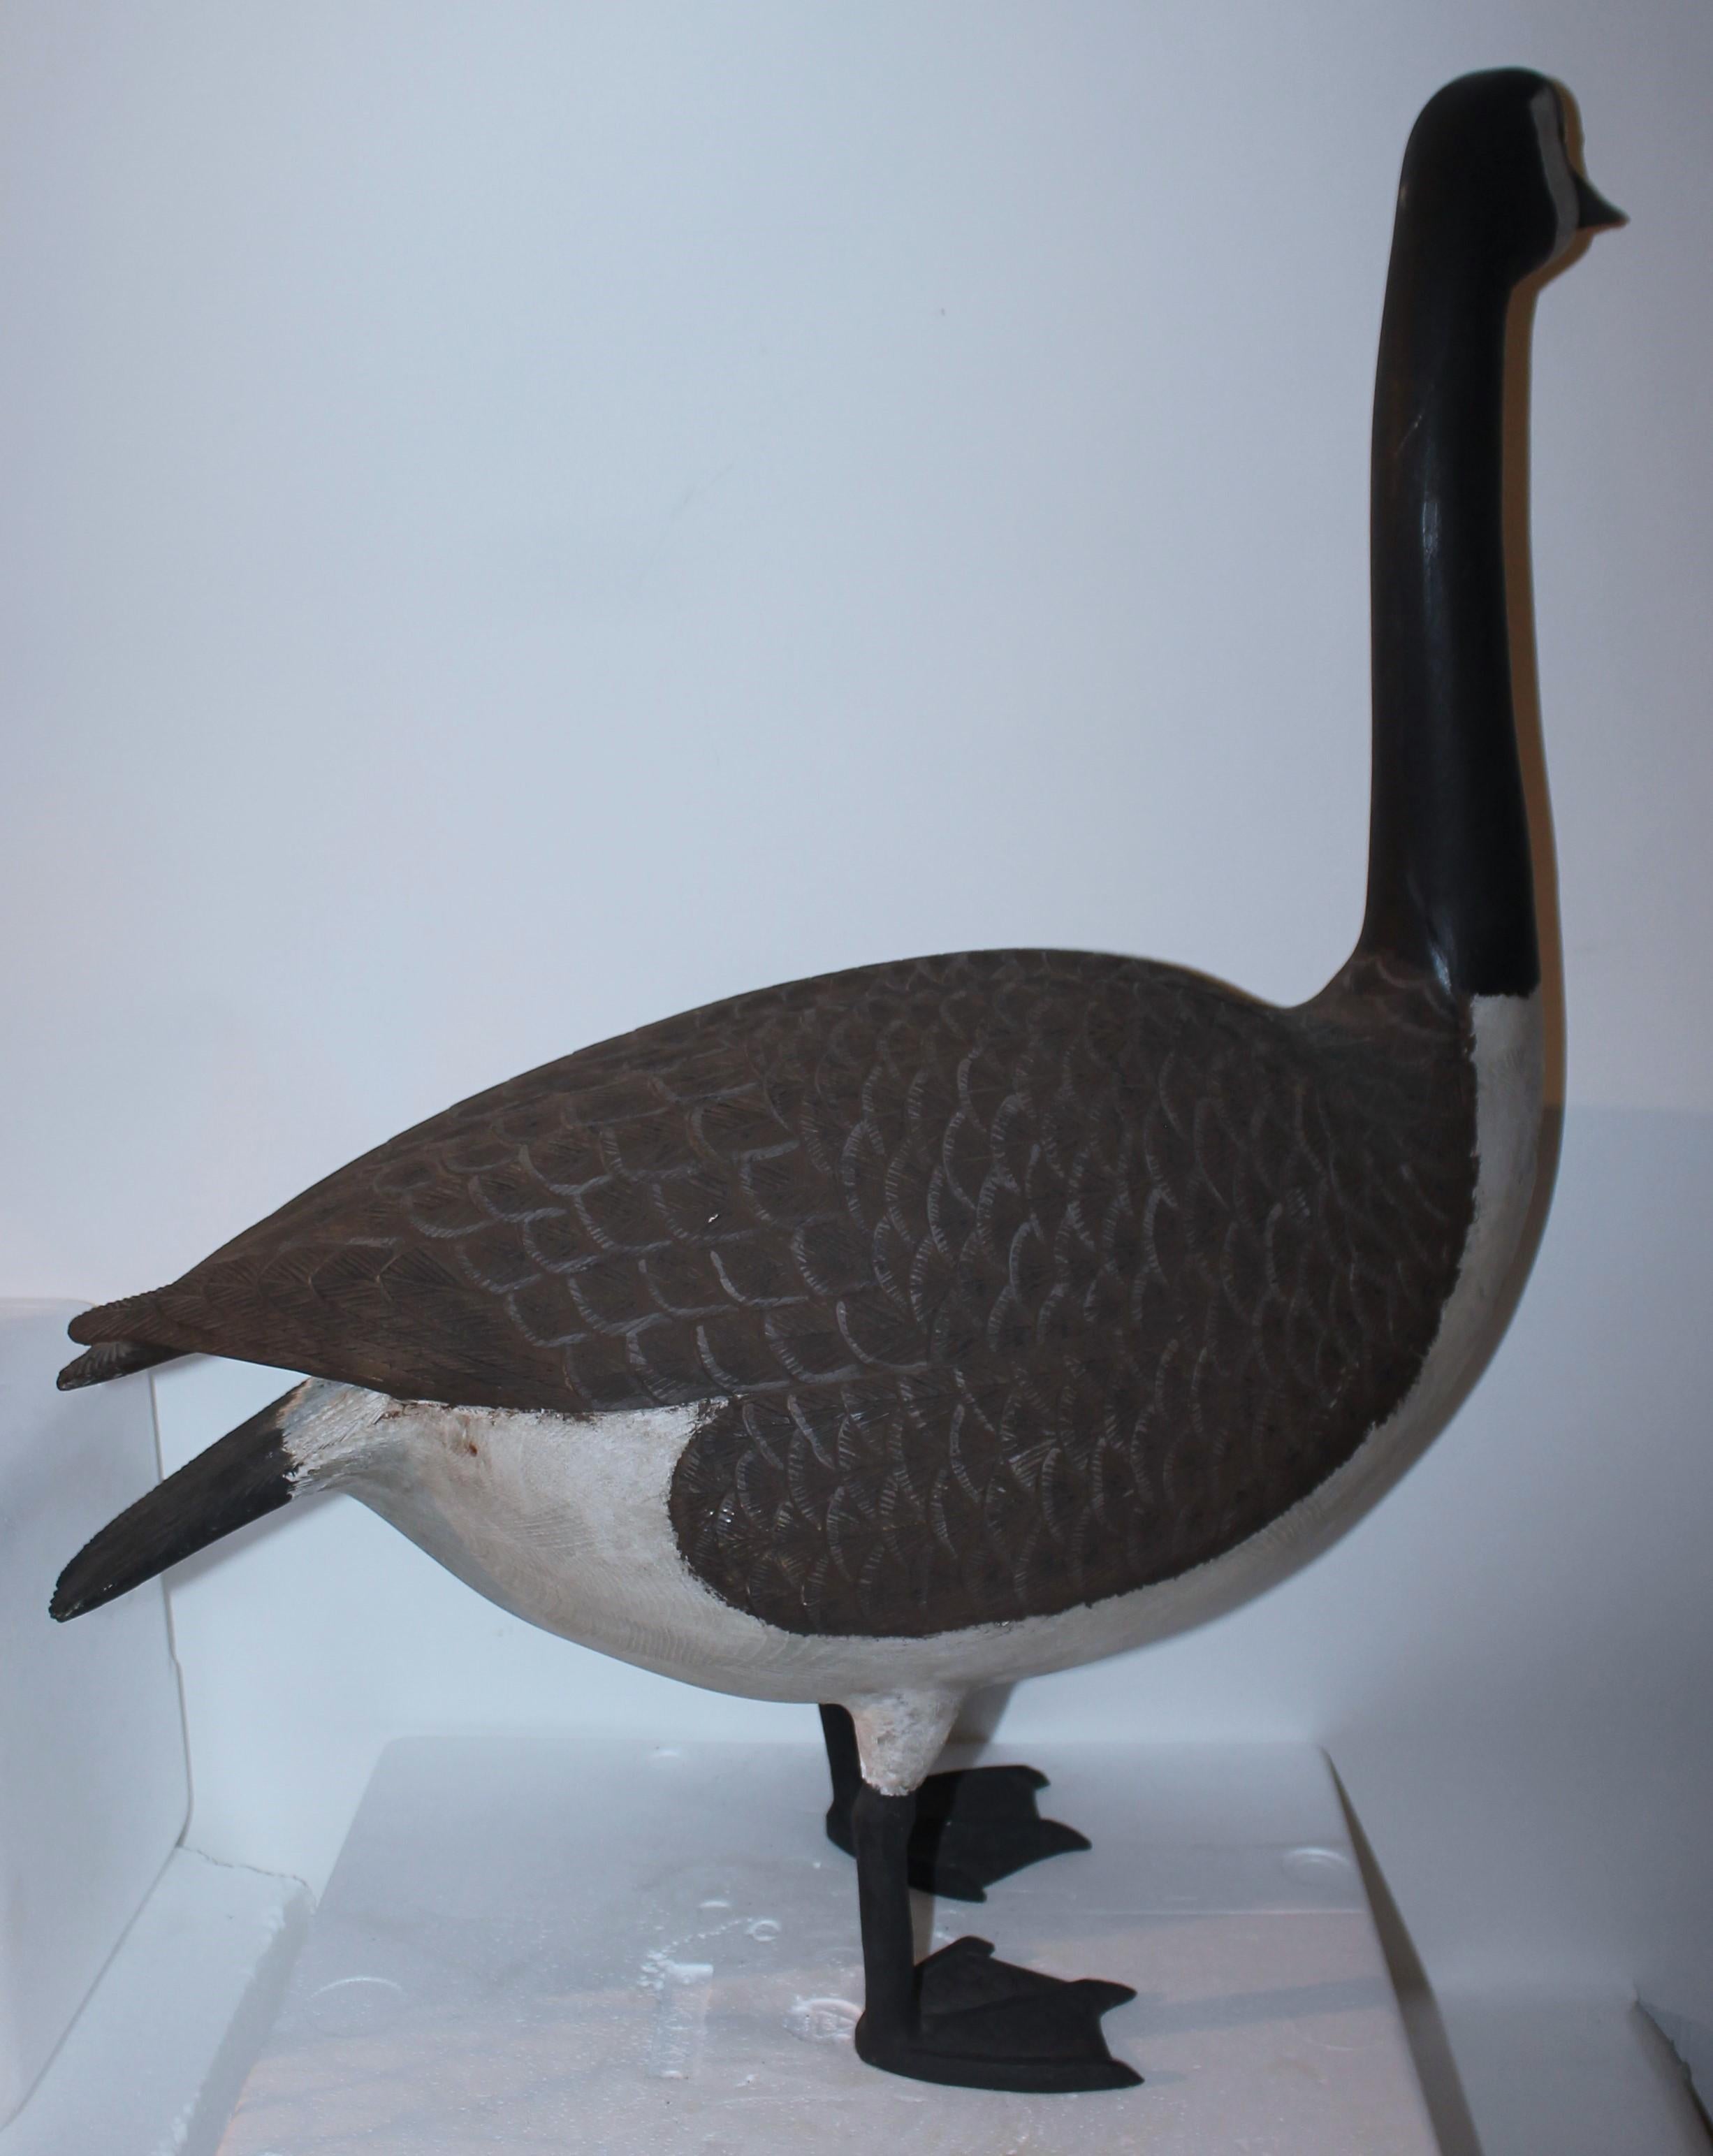 carved goose